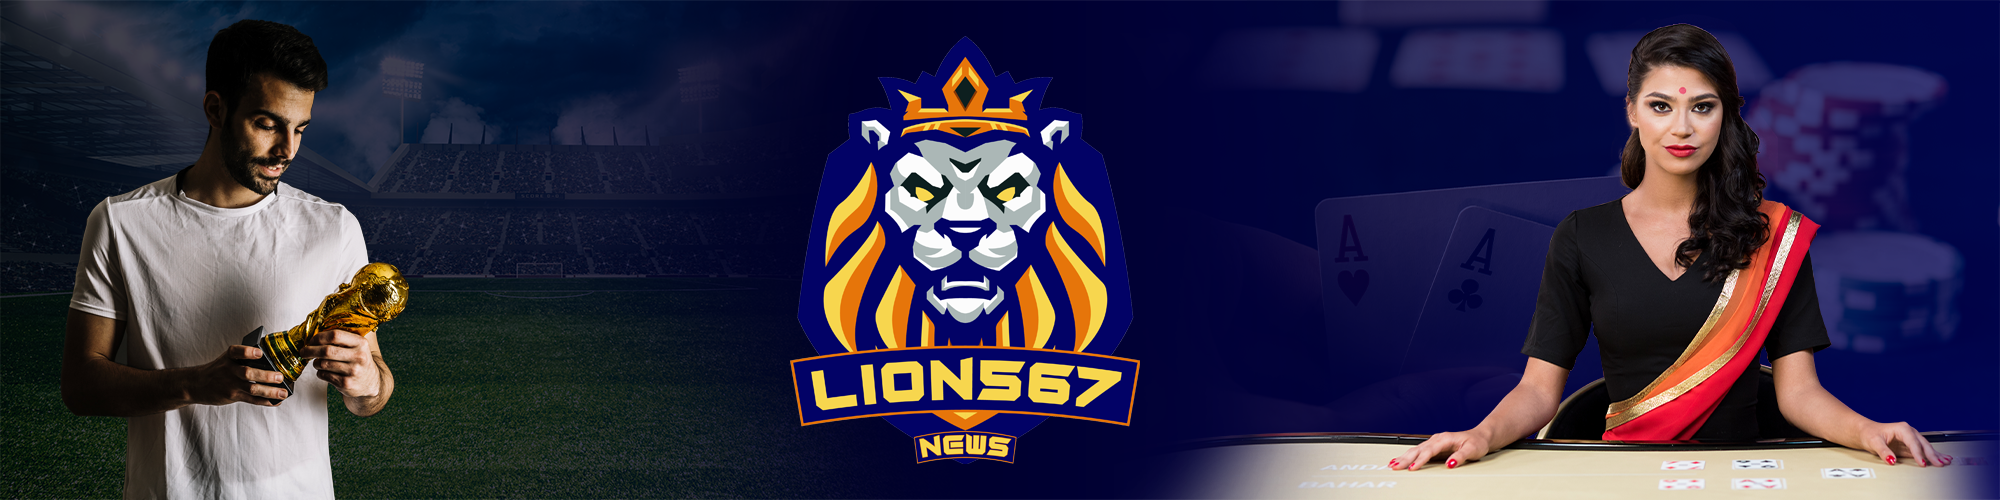 Company Logo For Lion567 News'